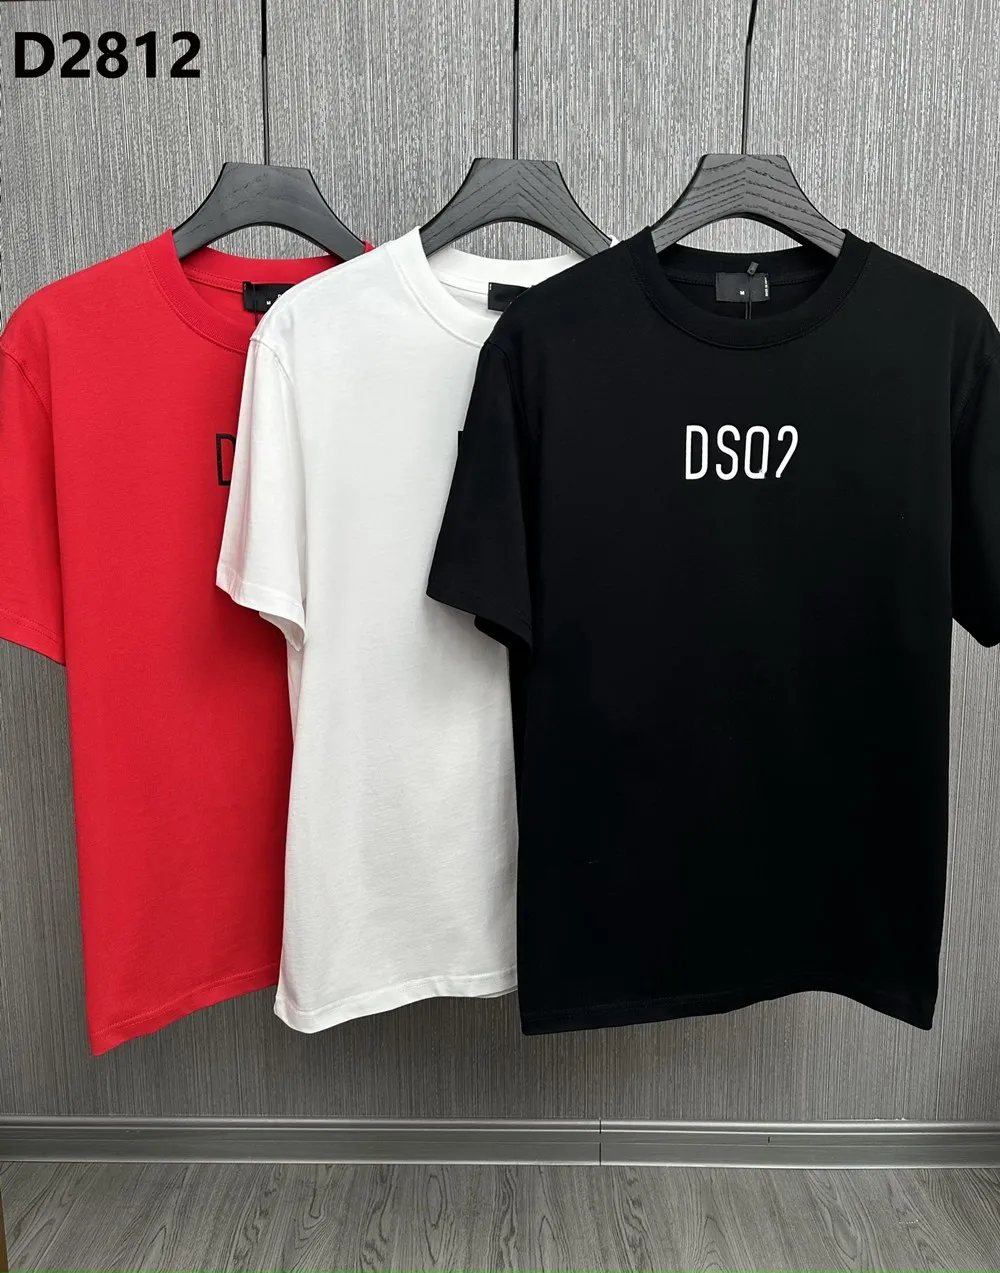 Nuove Marche Hip Hop T-shirt Uomo Manica Corta in Cotone Magliette T-shirt in Poliuretano Uomo Teel Designer Uomini Donne T-shirt DT2812